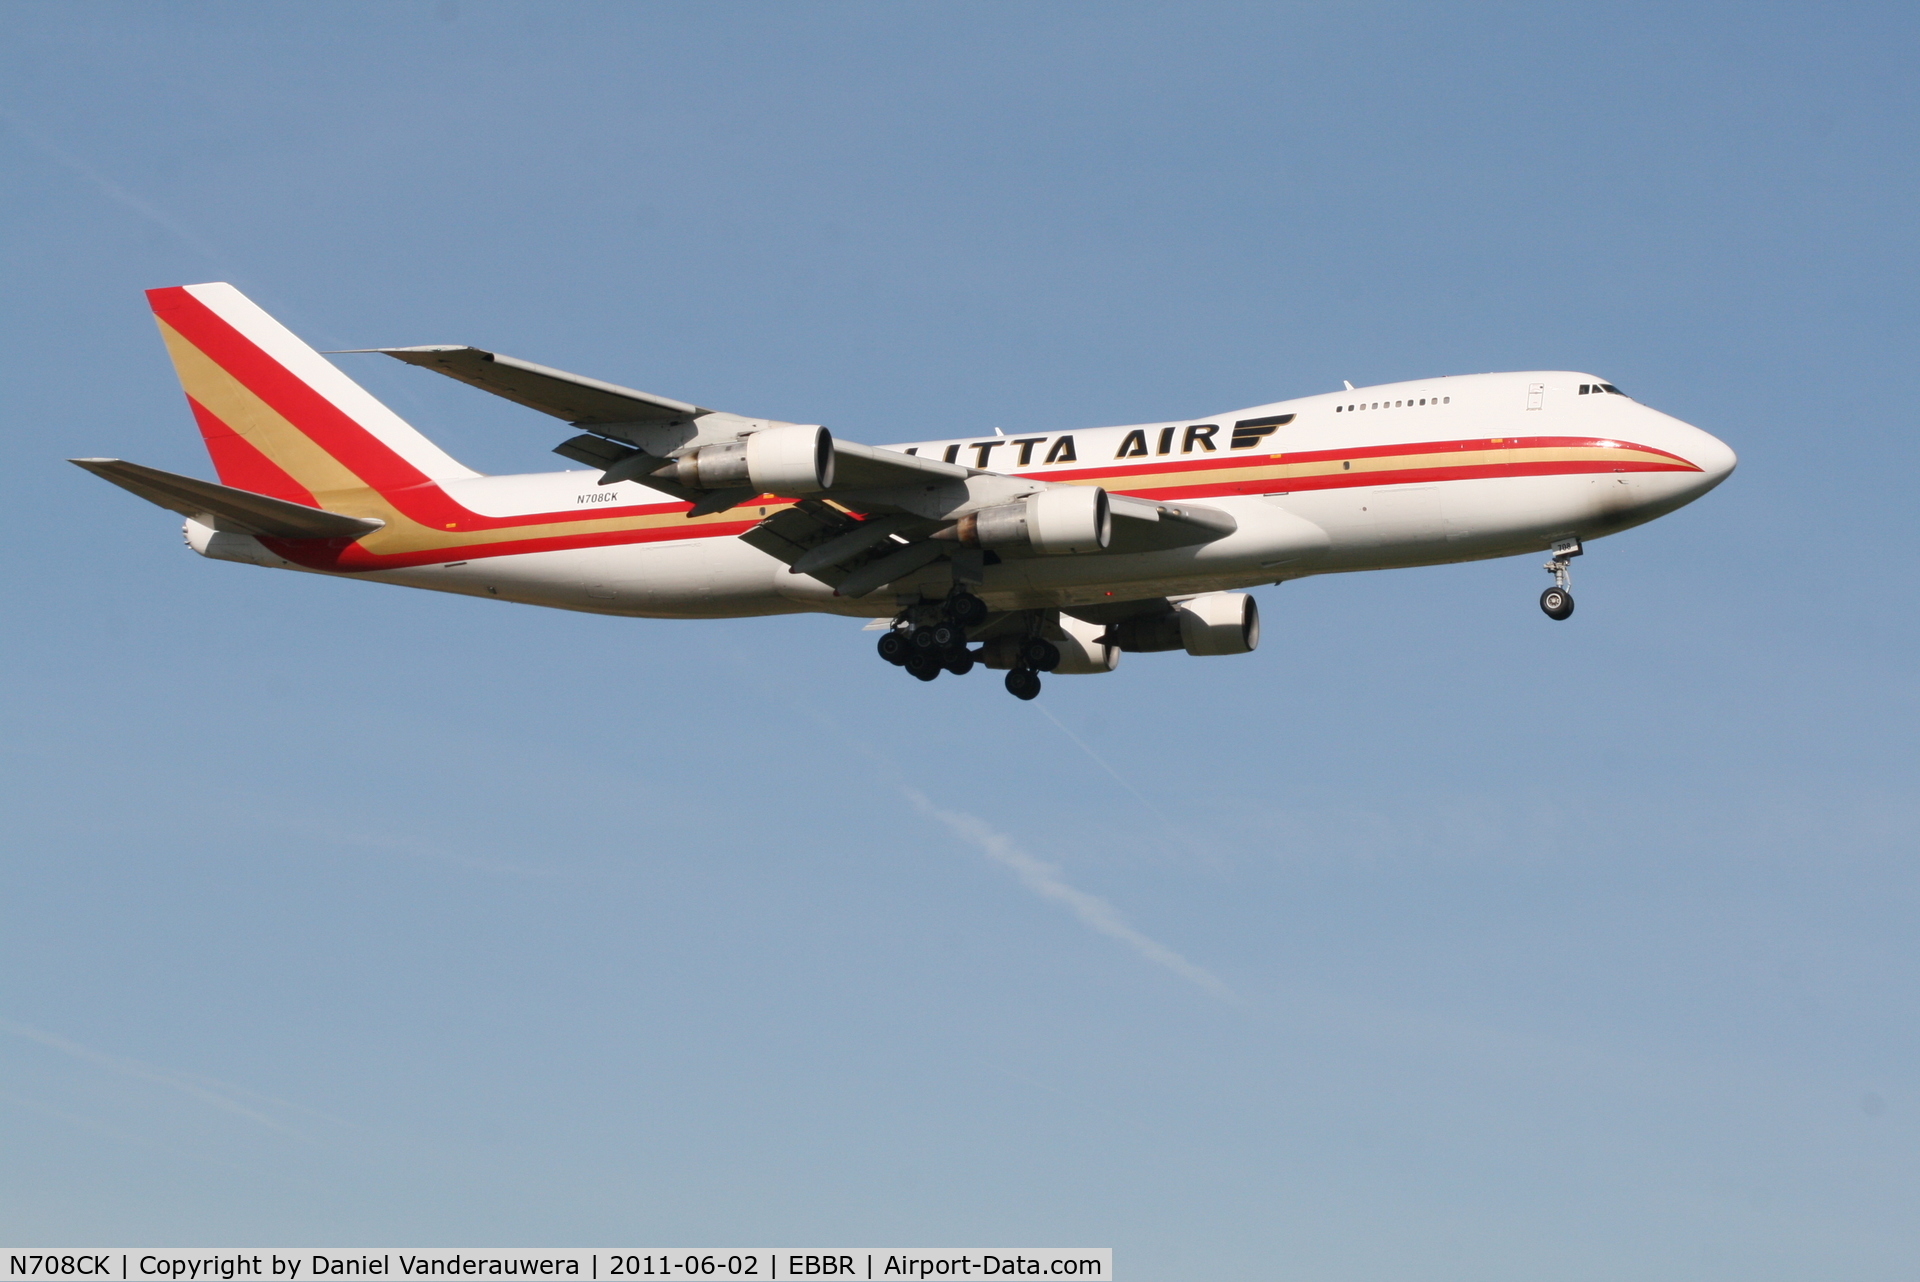 N708CK, 1980 Boeing 747-212B C/N 21937, Arrival of flight K4 344 to RWY 02